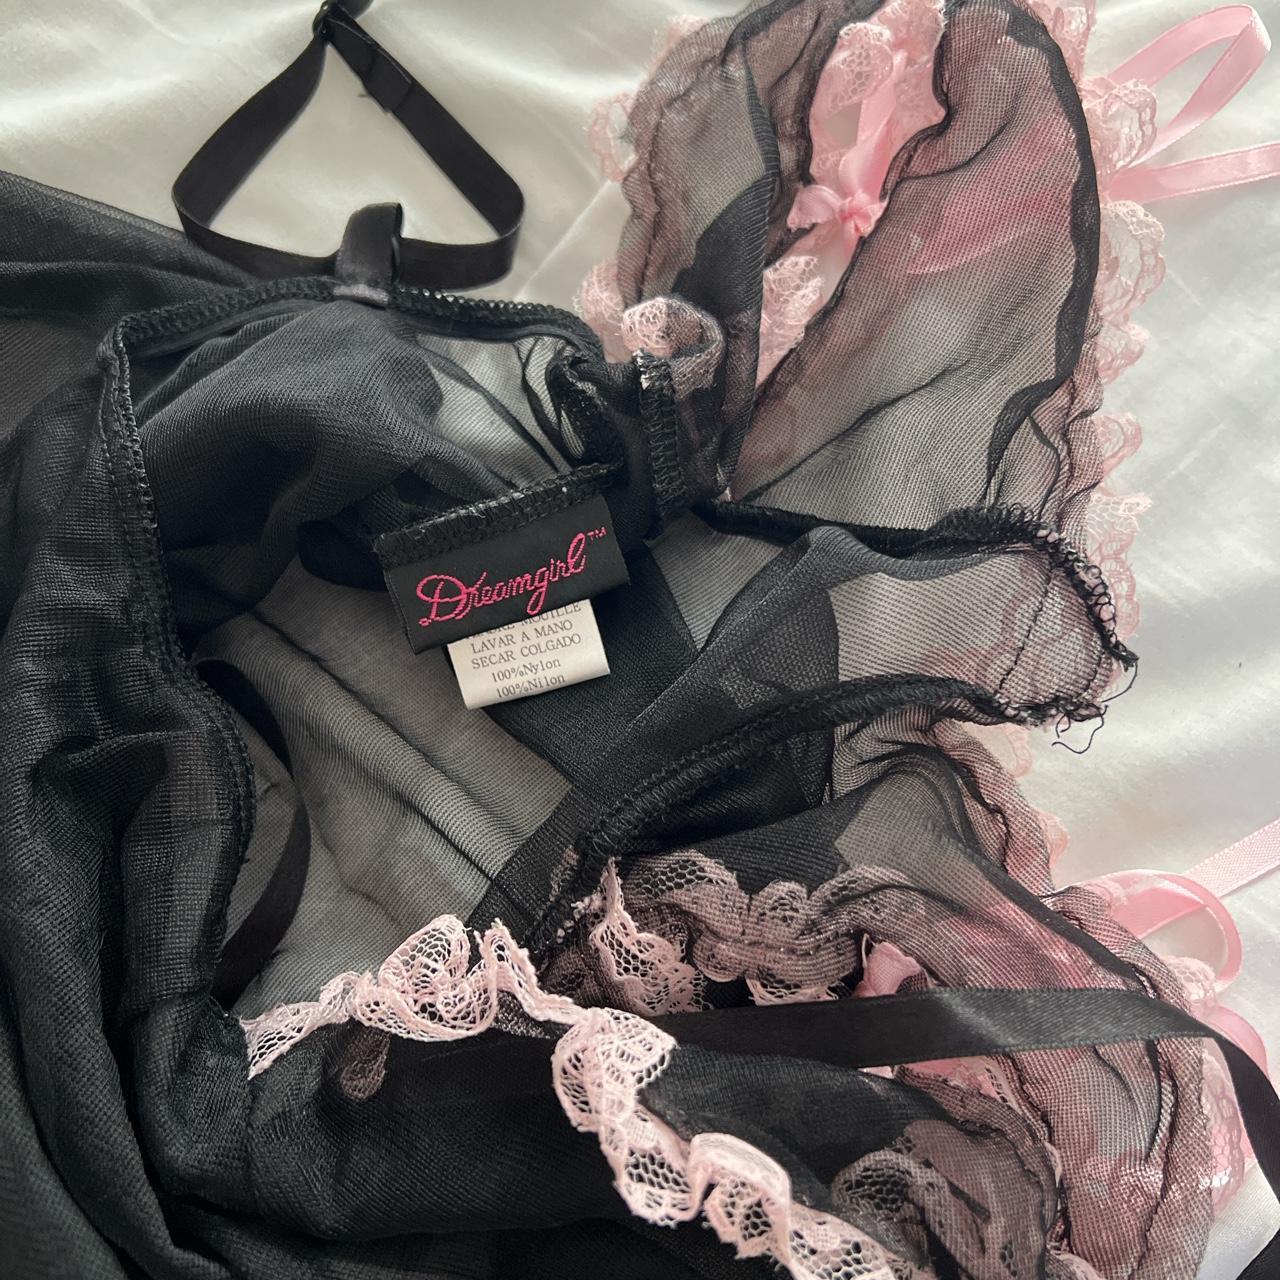 Dreamgirl Women's Pink and Black Underwear (5)